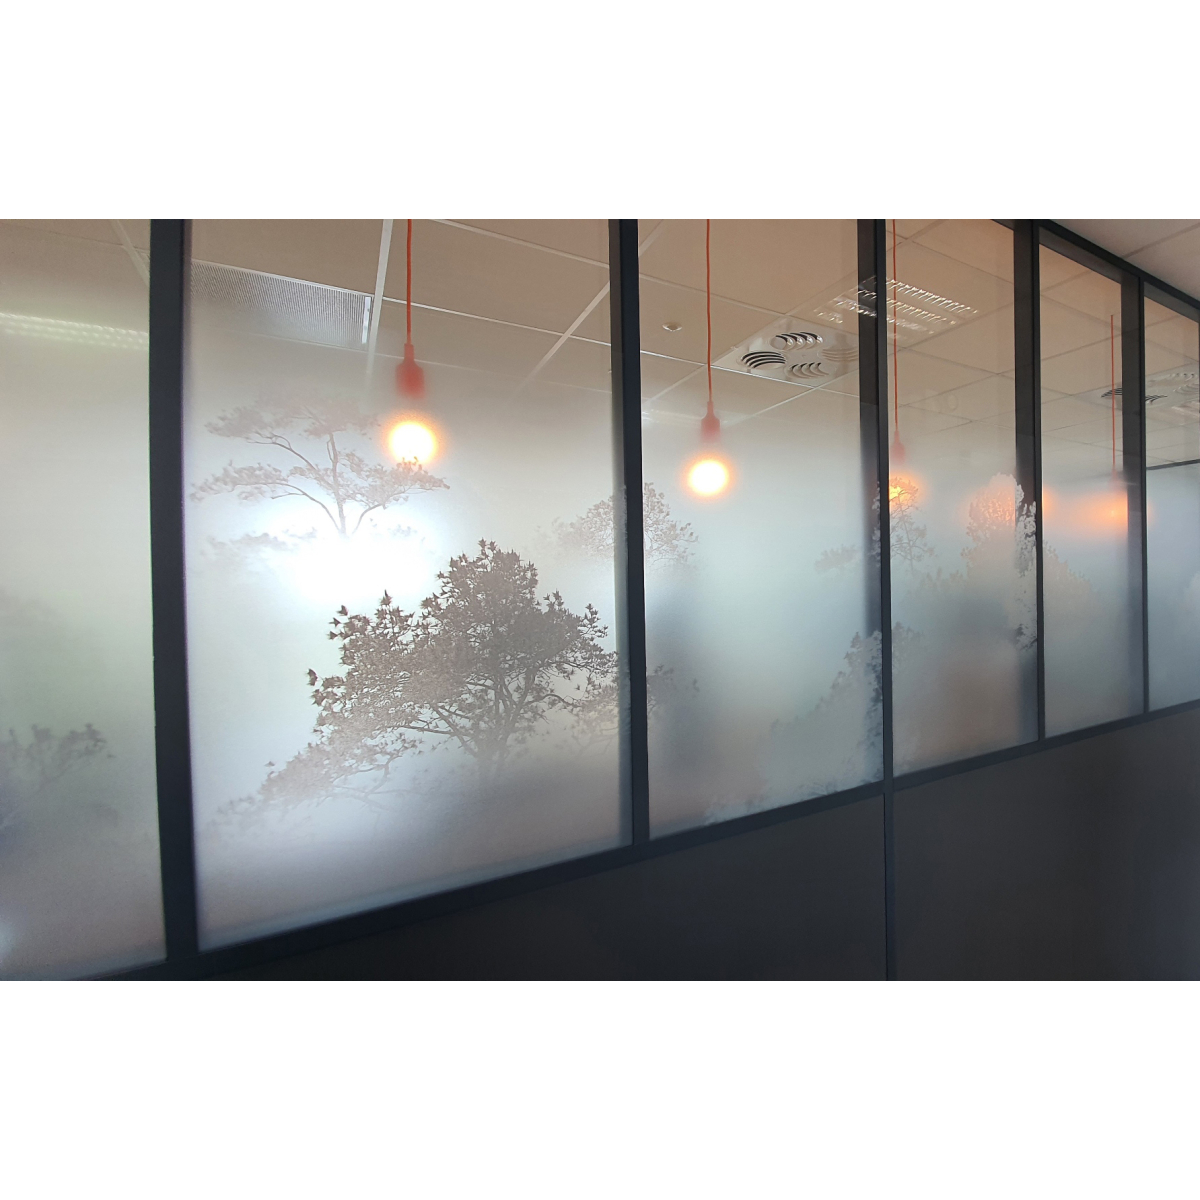 Pellicola decorativa per finestre Morning mist deco depoli | Acte-Deco